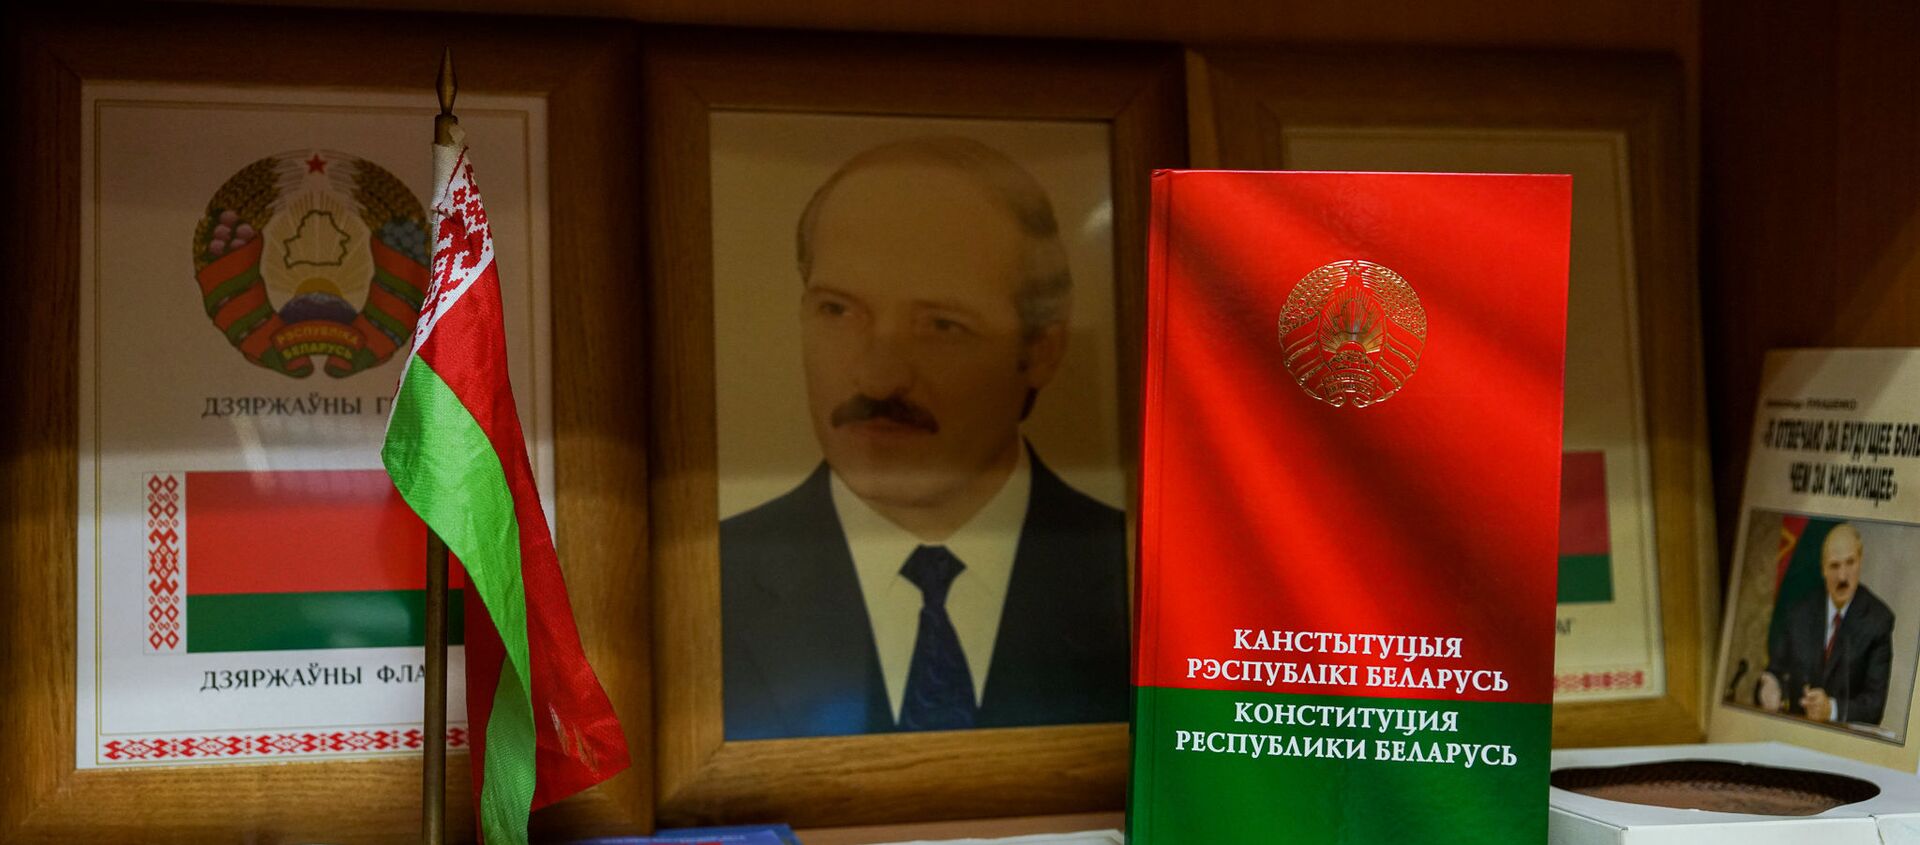 Портрет президента Беларуси Александра Лукашенко и конституция Республики Беларусь - Sputnik Латвия, 1920, 08.12.2020